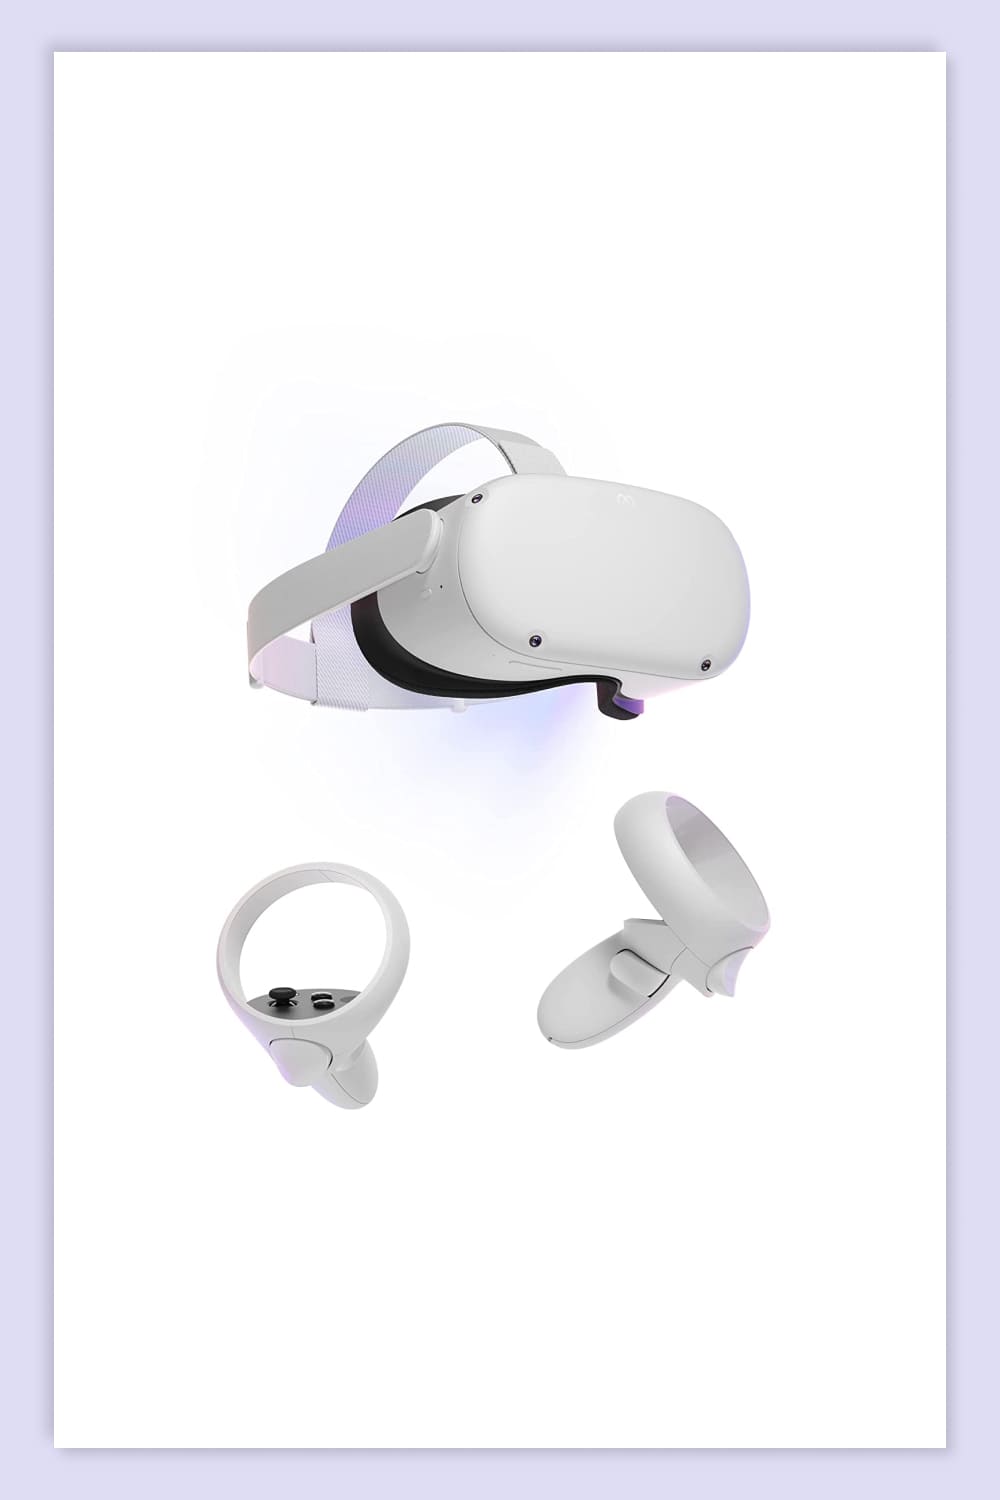 White VR Headset.